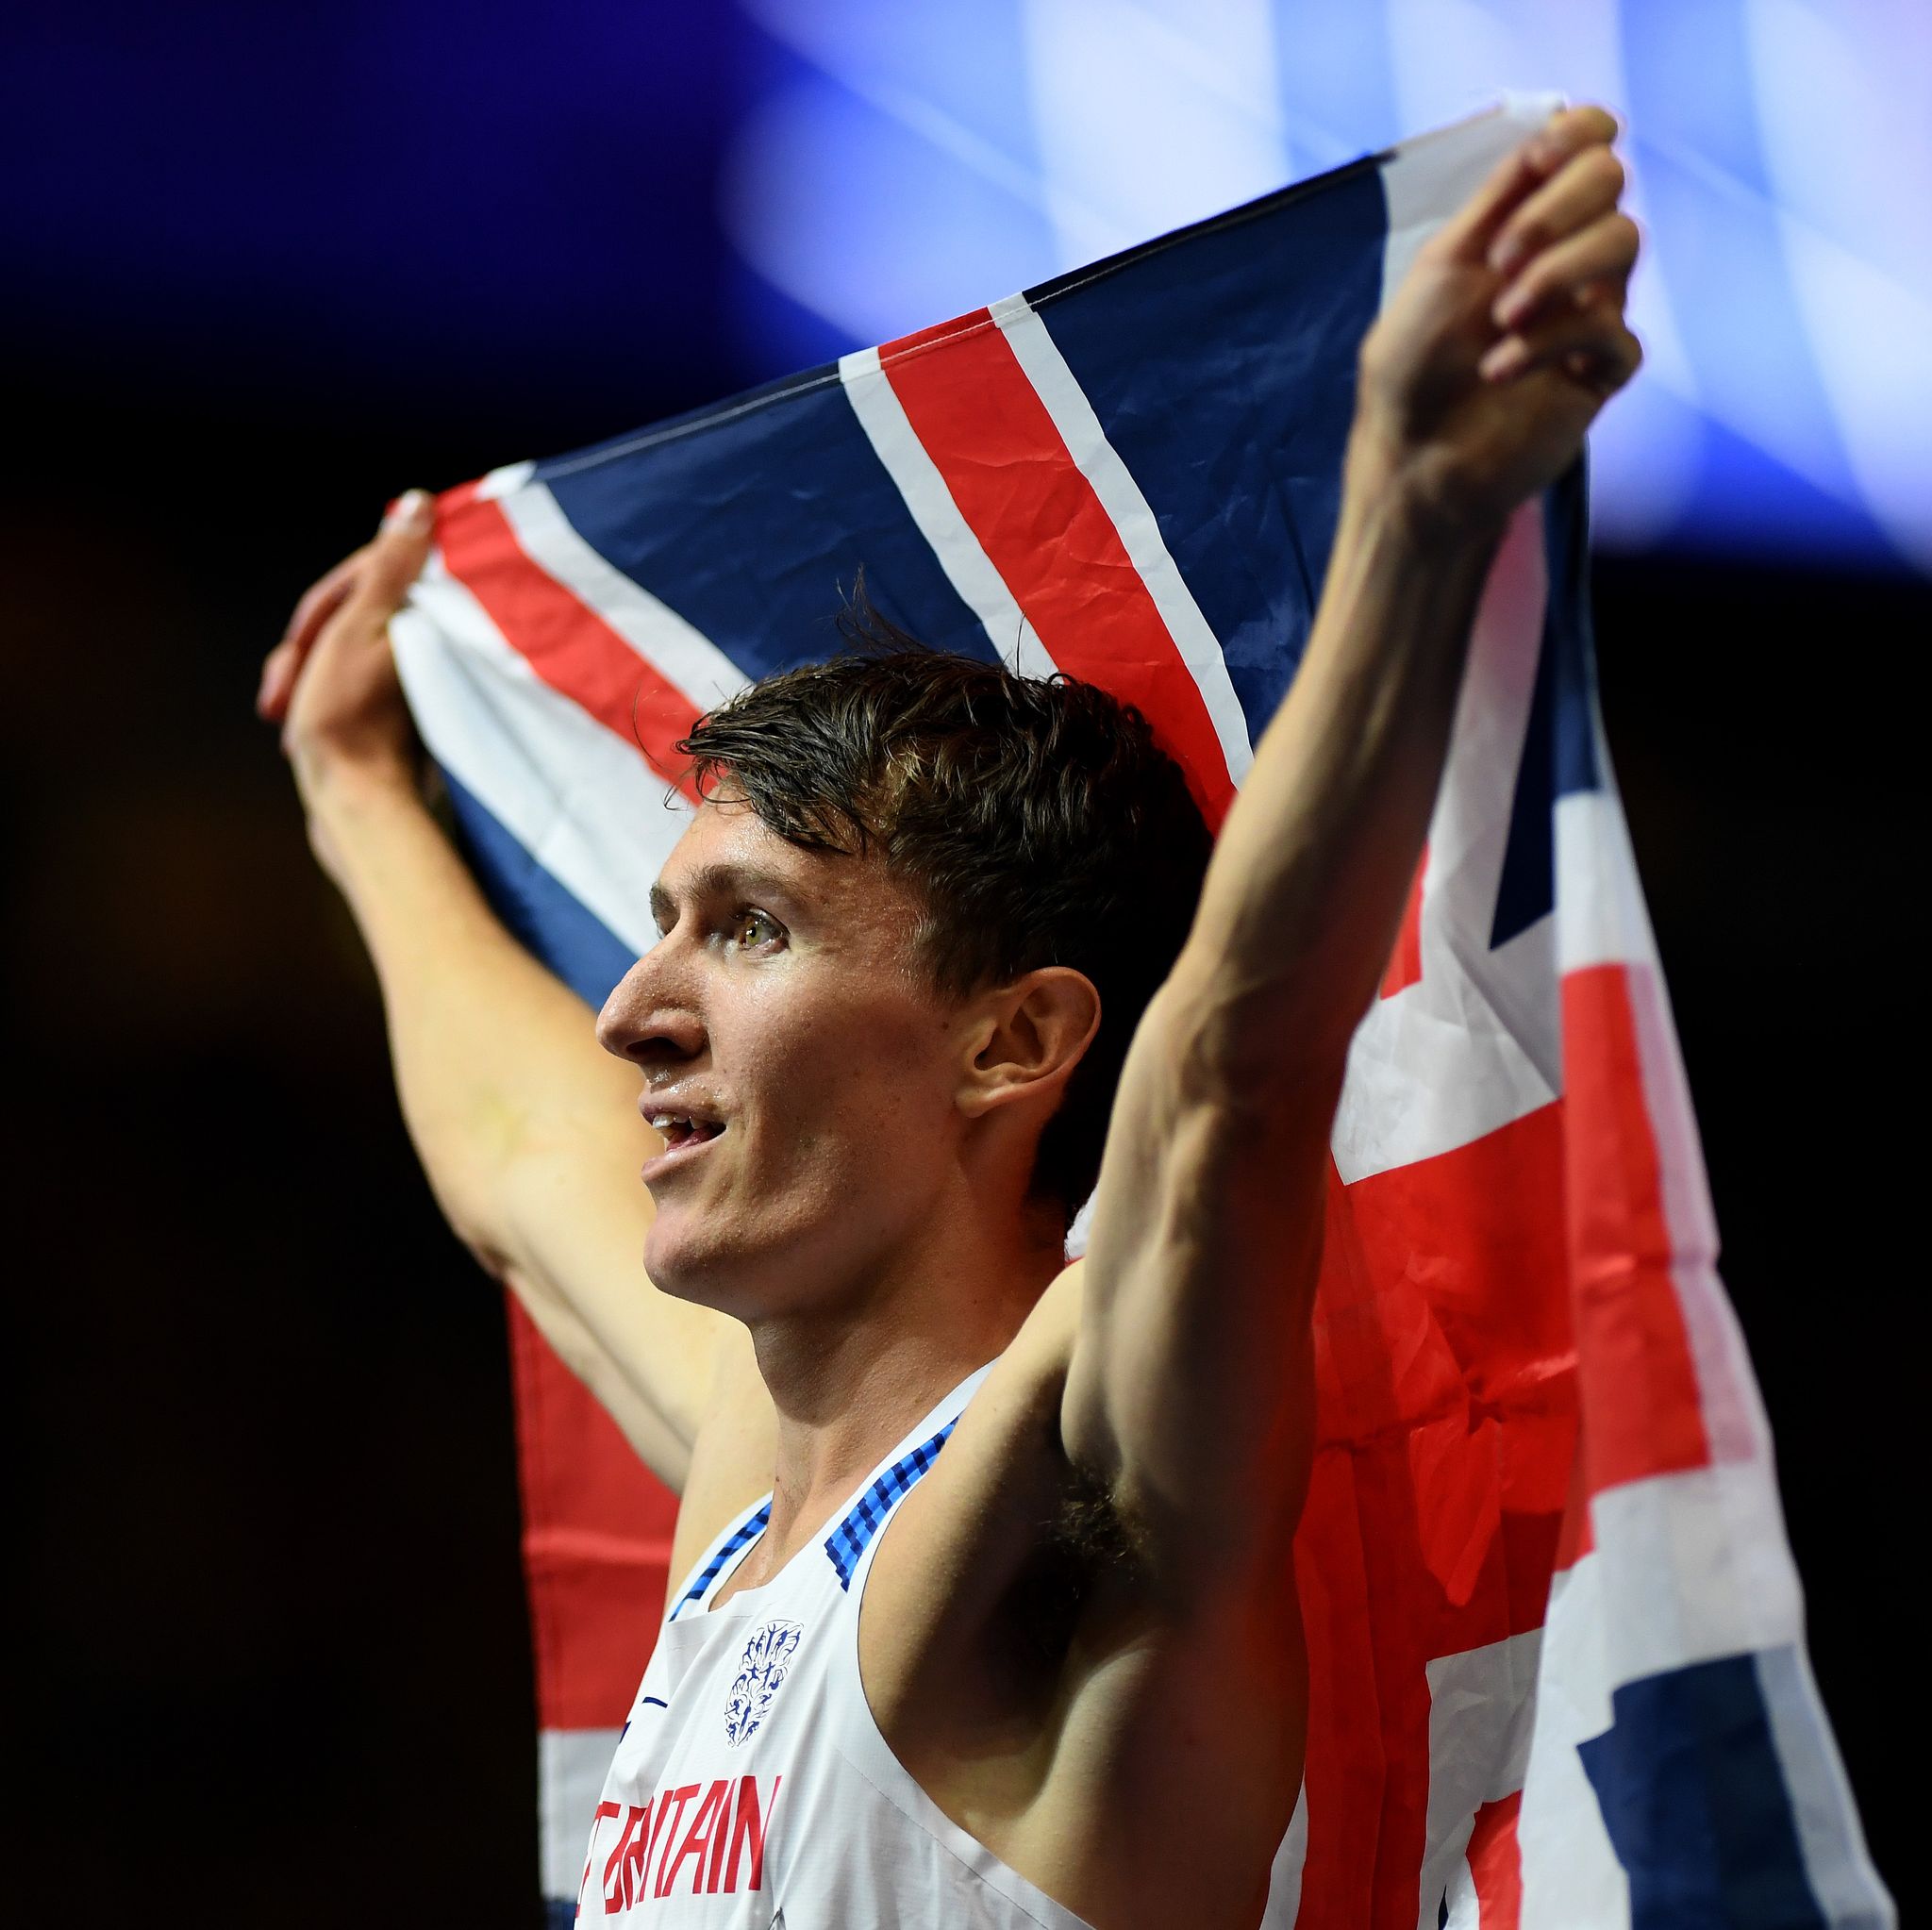 Jake Wightman breaks British 1,000m indoor record